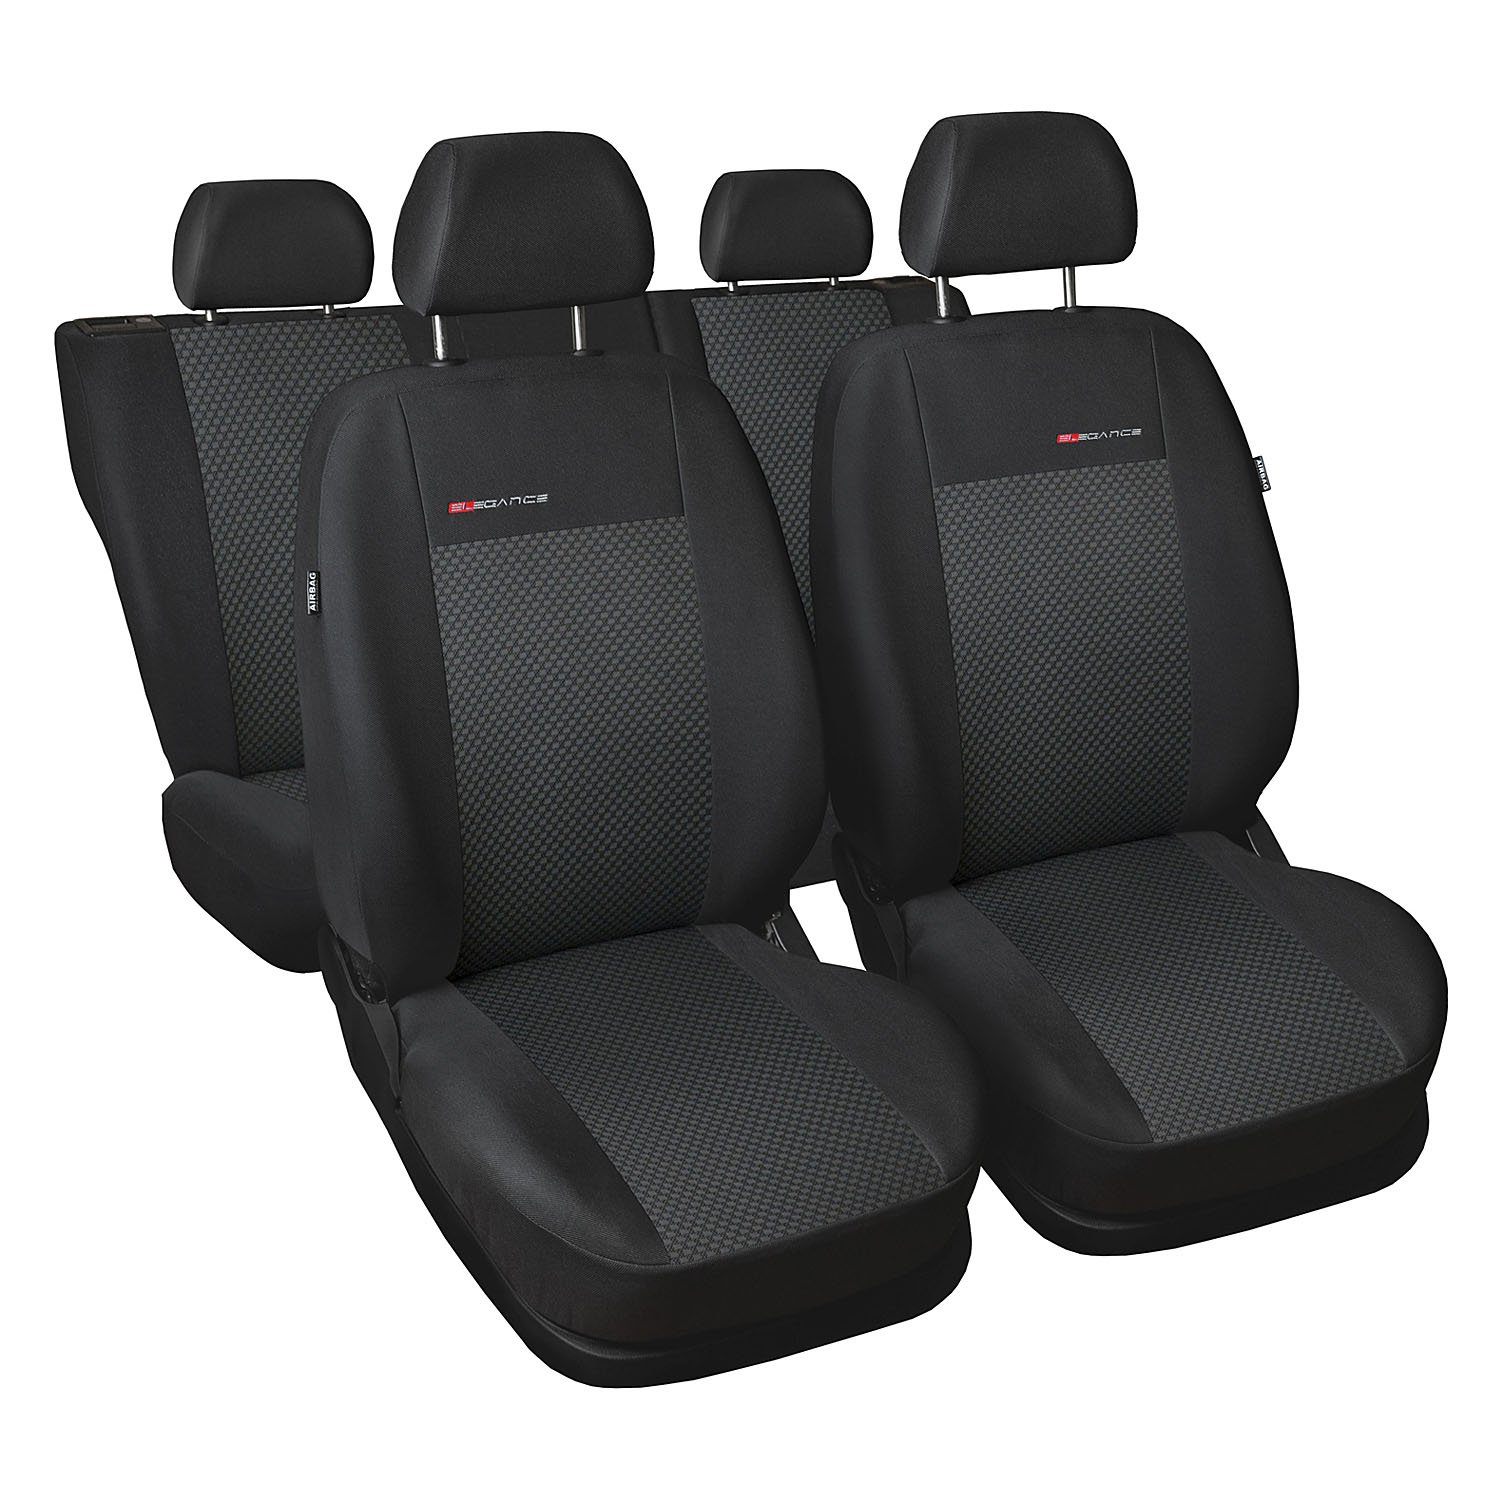 GSC Sitzbezüge Autositzbezug Komplettset 5-Sitze, Universal Grau, Elegance, kompatibel mit Toyota Yaris 5-Sitze